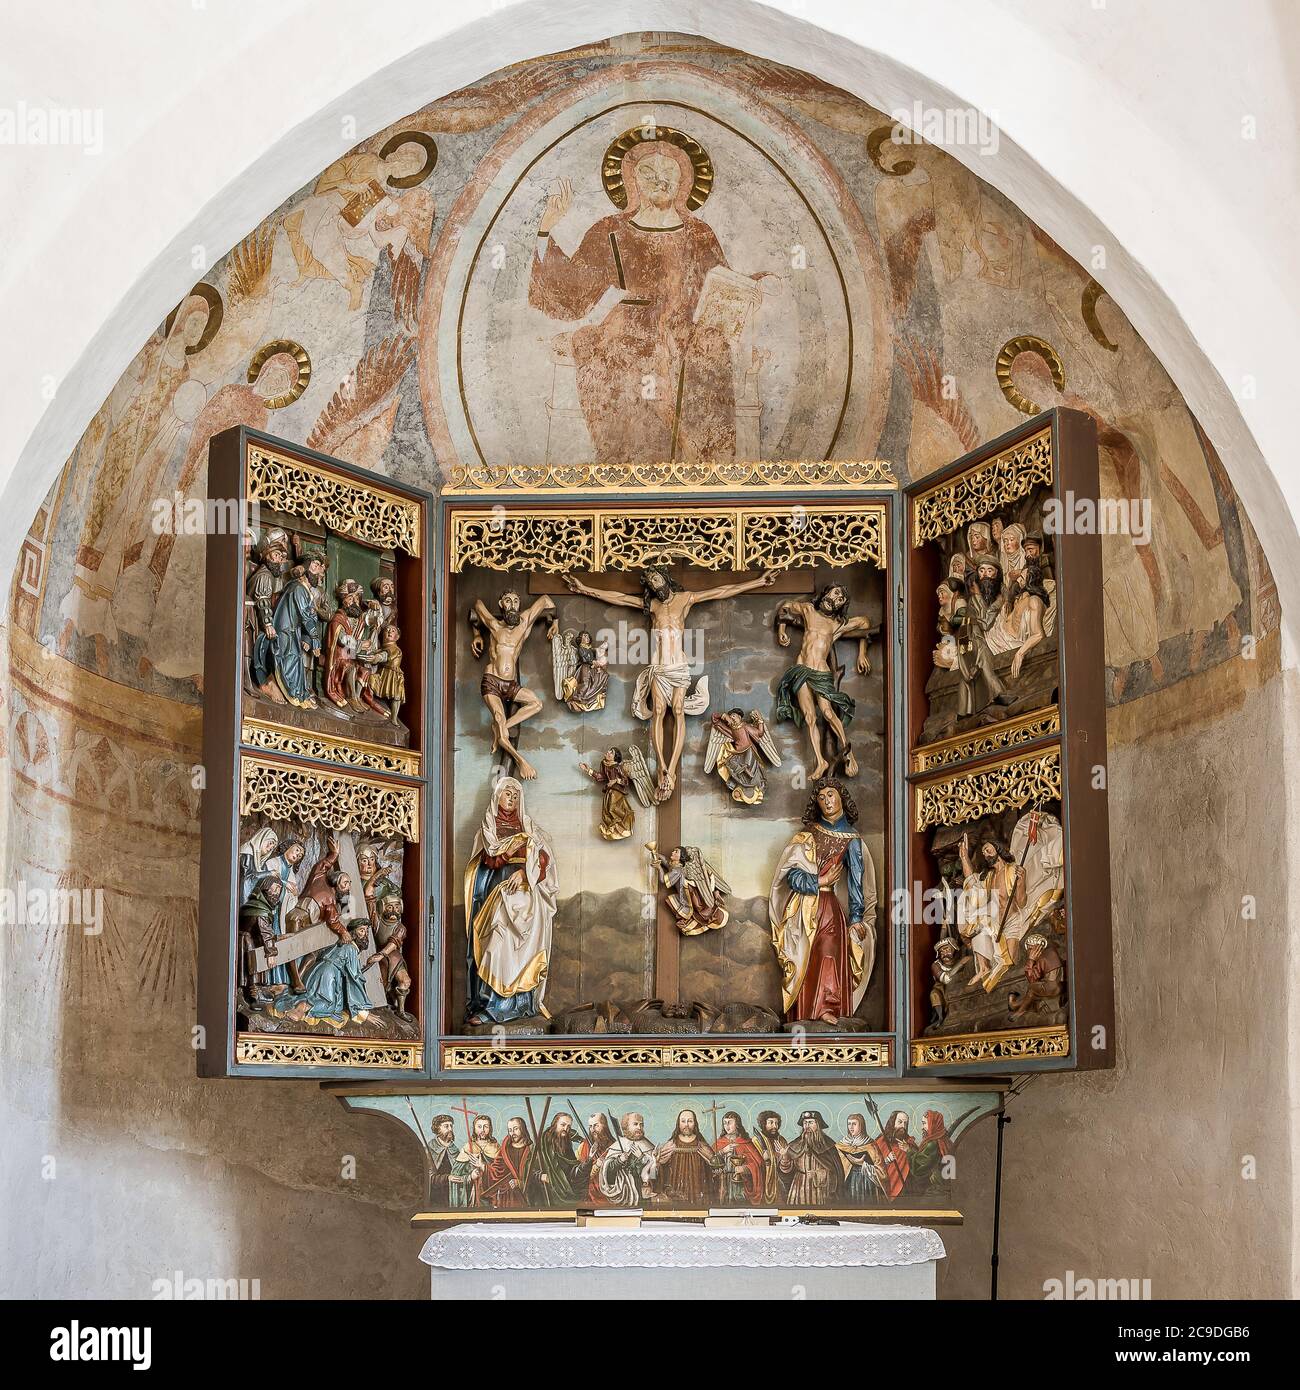 Triptyque du XVIe siècle de la crucifixion et des peintures murales romanes, Hagested, Danemark, 16 juillet 2020 Banque D'Images